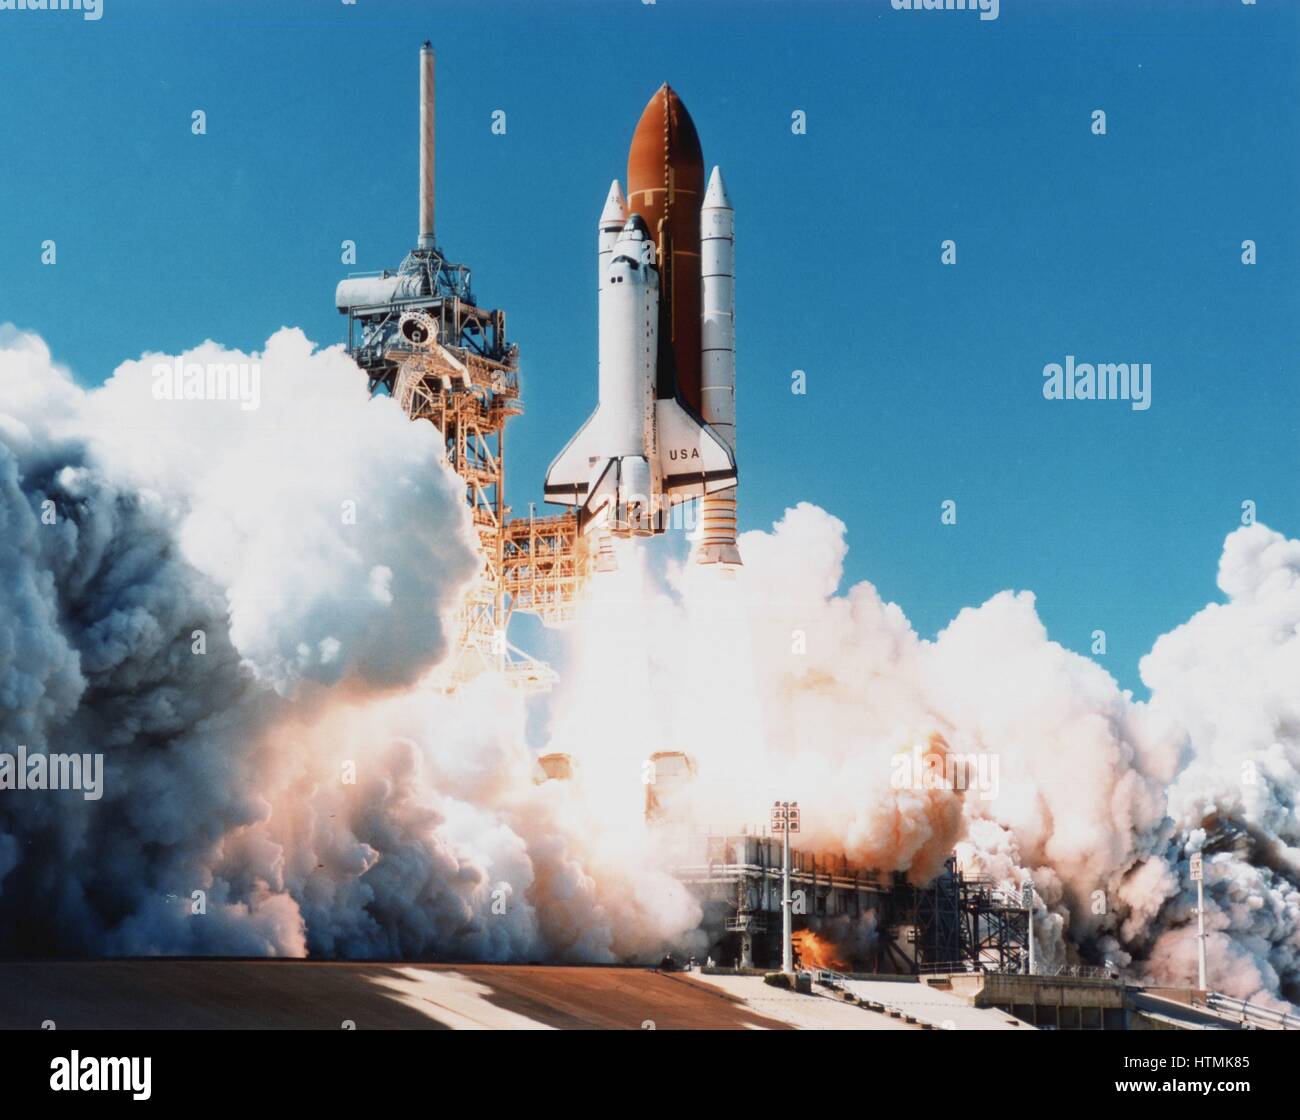 Lancio della navetta spaziale Columbia da Kennedy Space Center, Florida, 4 aprile 1997. Fotografia della NASA. Foto Stock